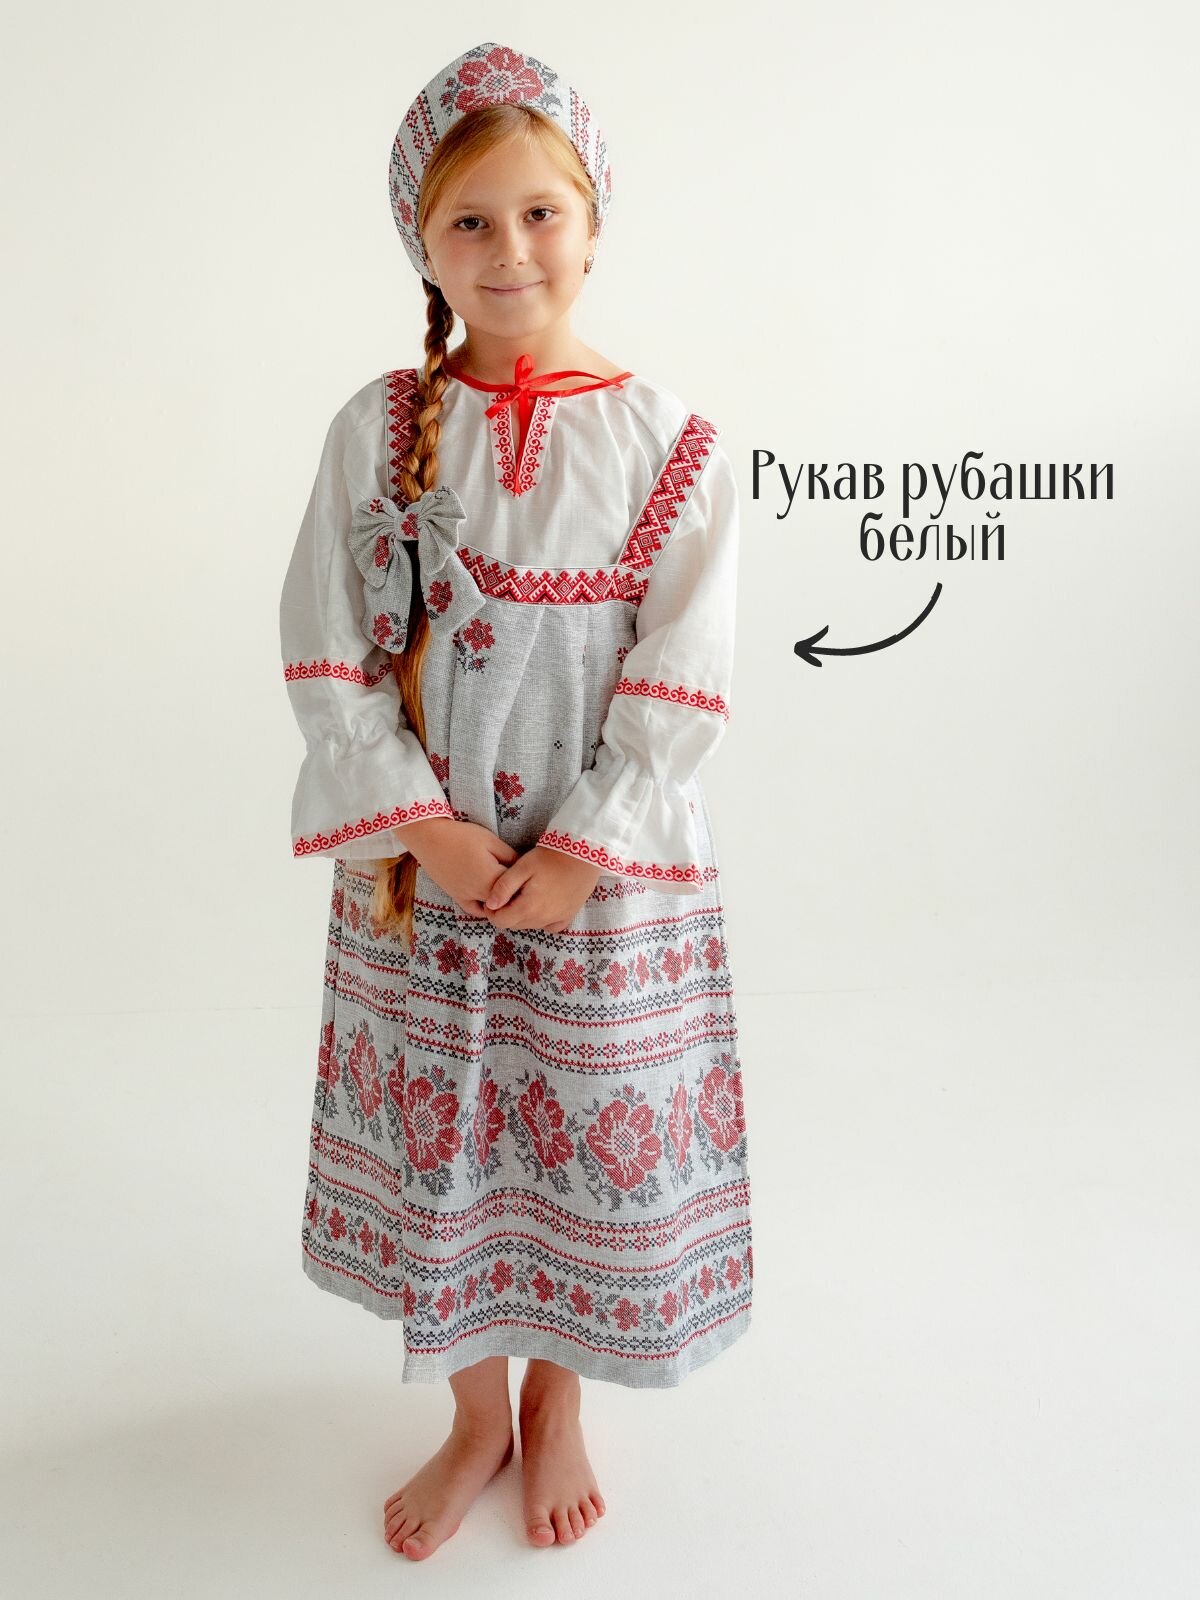 Русский народный костюм сарафан и рубашка Орнамент